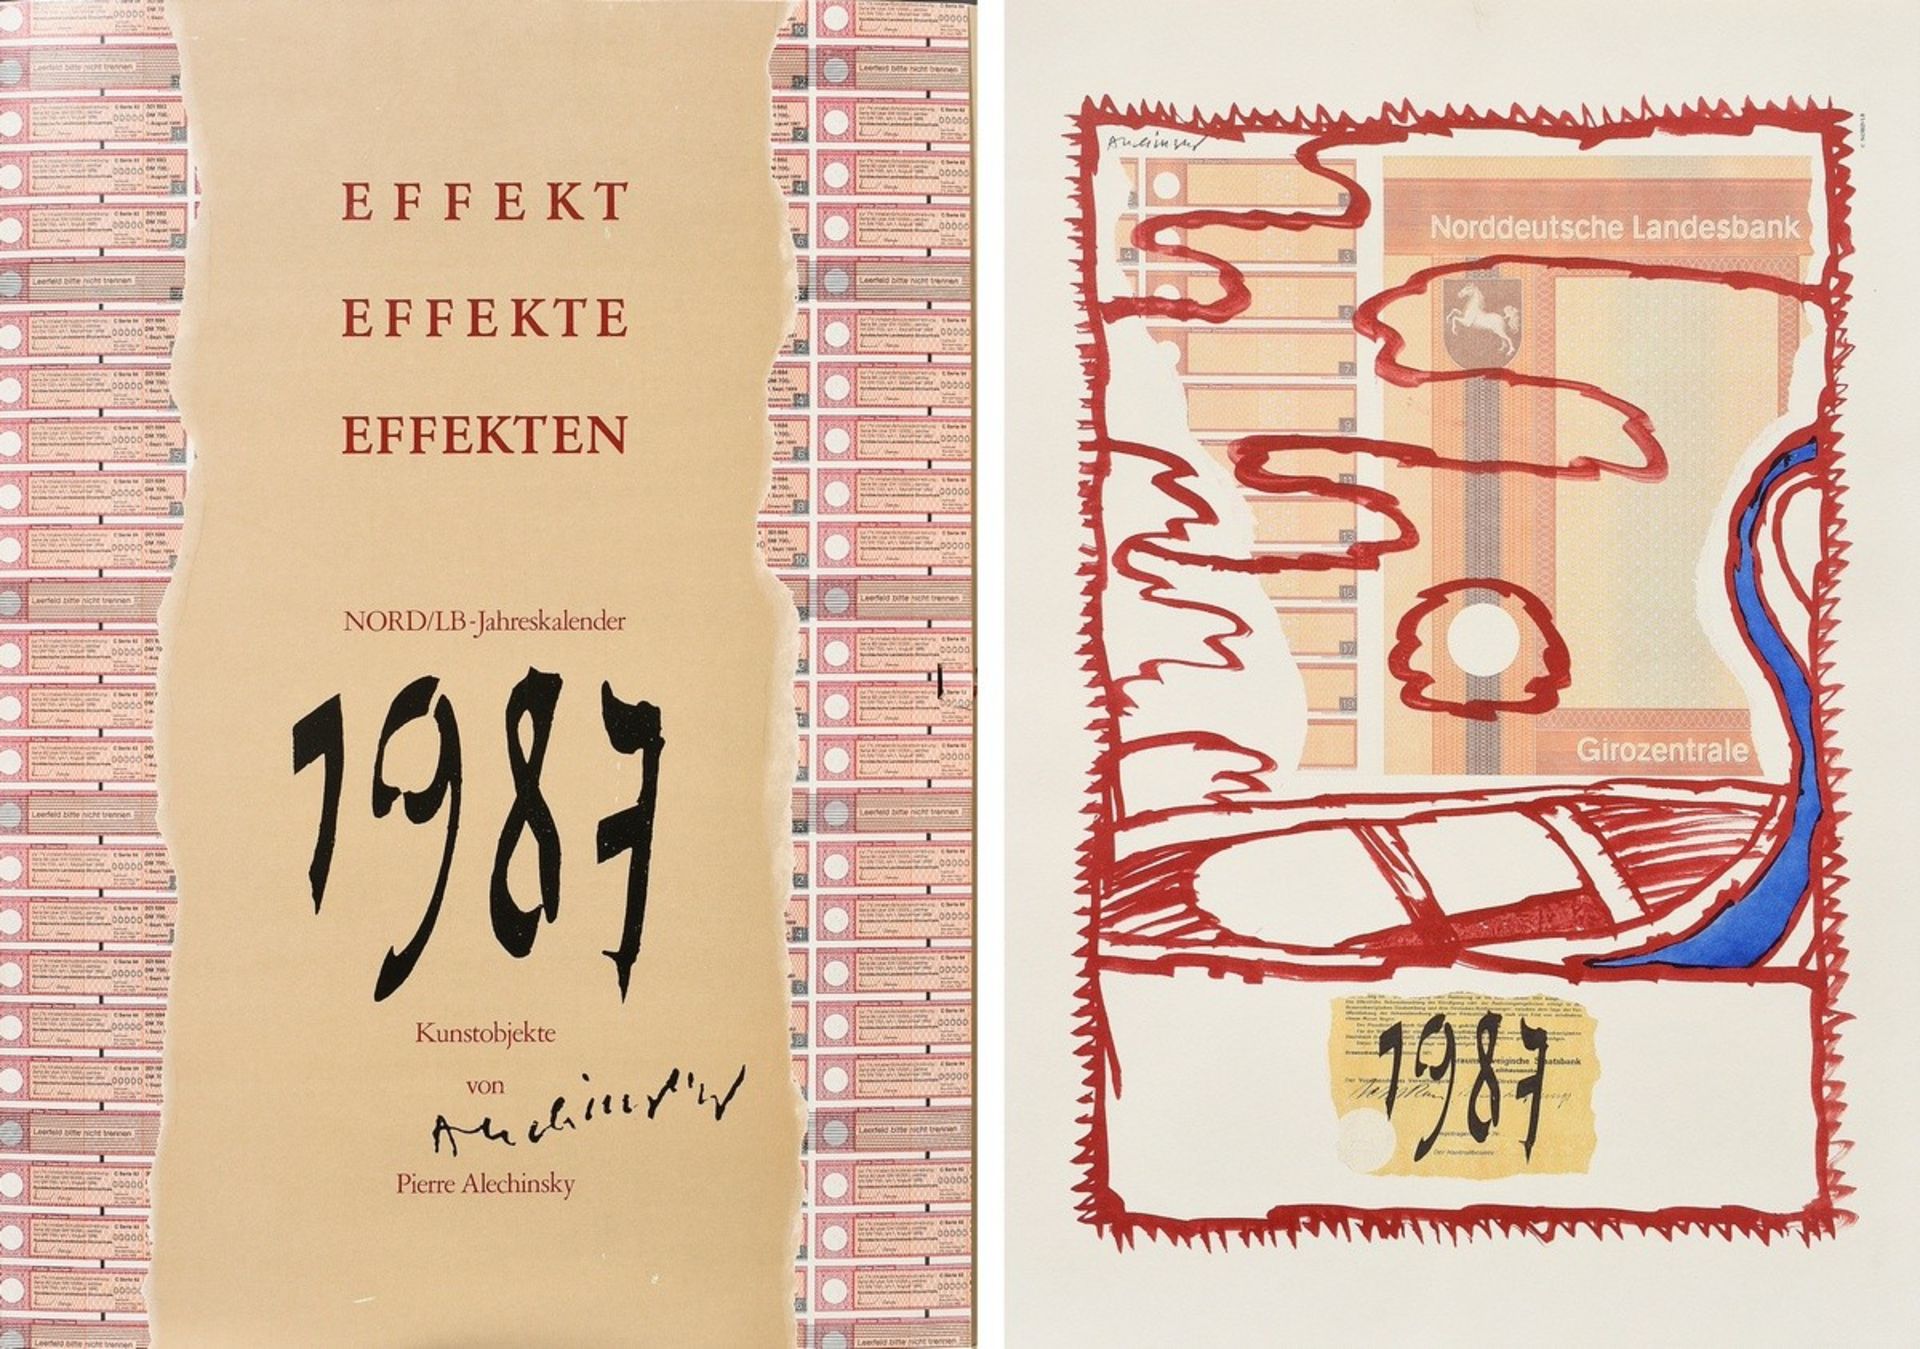 Alechinsky, Pierre (*1927) Portfolio "Effekt-Effekte-Effekten" 1987, colour offset lithograph, 6 si